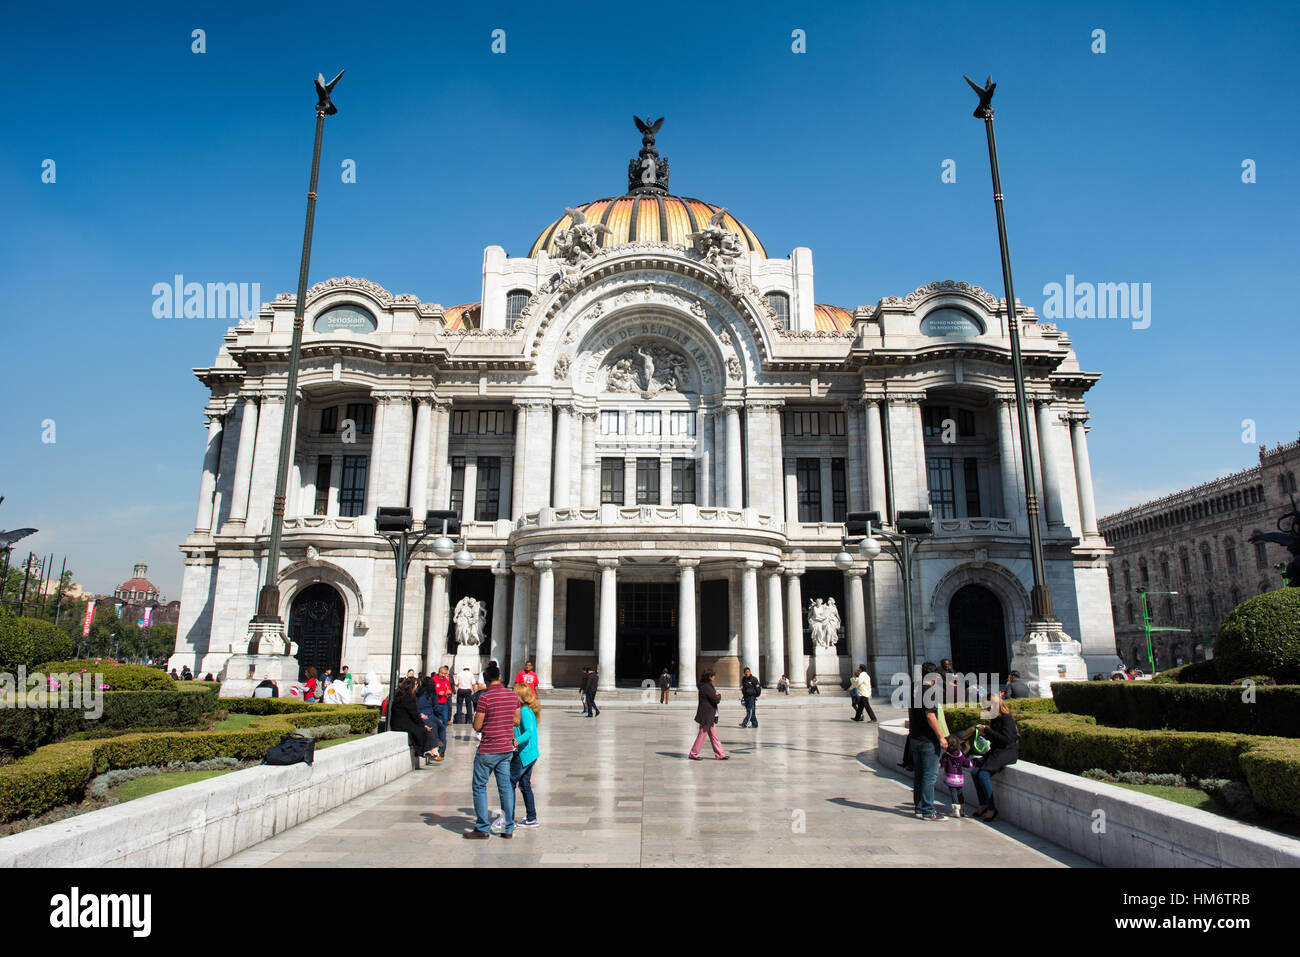 Il Palacio de Bellas Artes del Messico ospita il teatro nazionale. Con un esterno che è un mix di Neo Classicical e stile Art Nouveau e di un interno che dell'Art Deco, è ampiamente considerato come il più bel edificio nel cuore di Città del Messico. Si data agli inizi del XX secolo e si trova nel centro storico di Città del Messico che è designato come Sito del Patrimonio Mondiale dell'UNESCO. Foto Stock